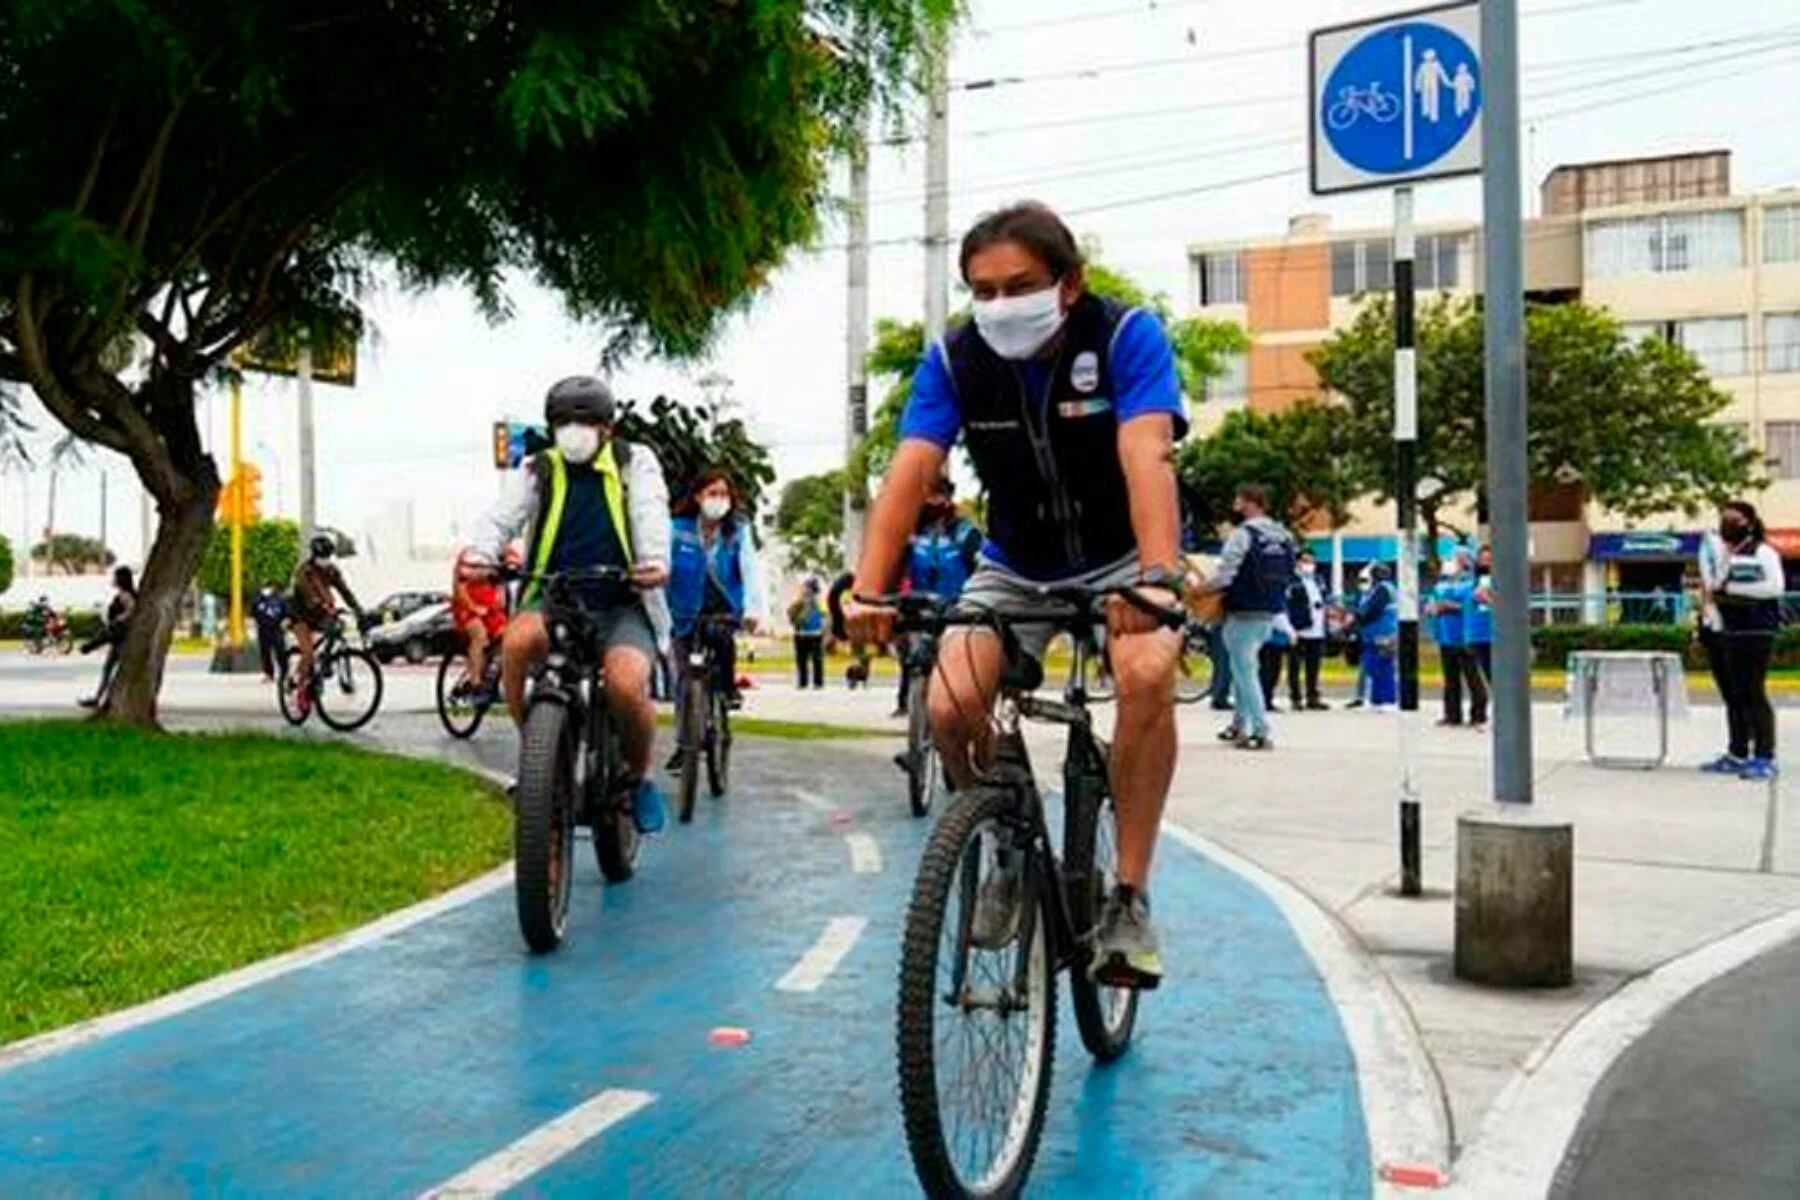 Al invertir en infraestructura y políticas adecuadas, como las ciclovías, podemos transformar nuestras ciudades en lugares más saludables y sostenibles. (Andina)